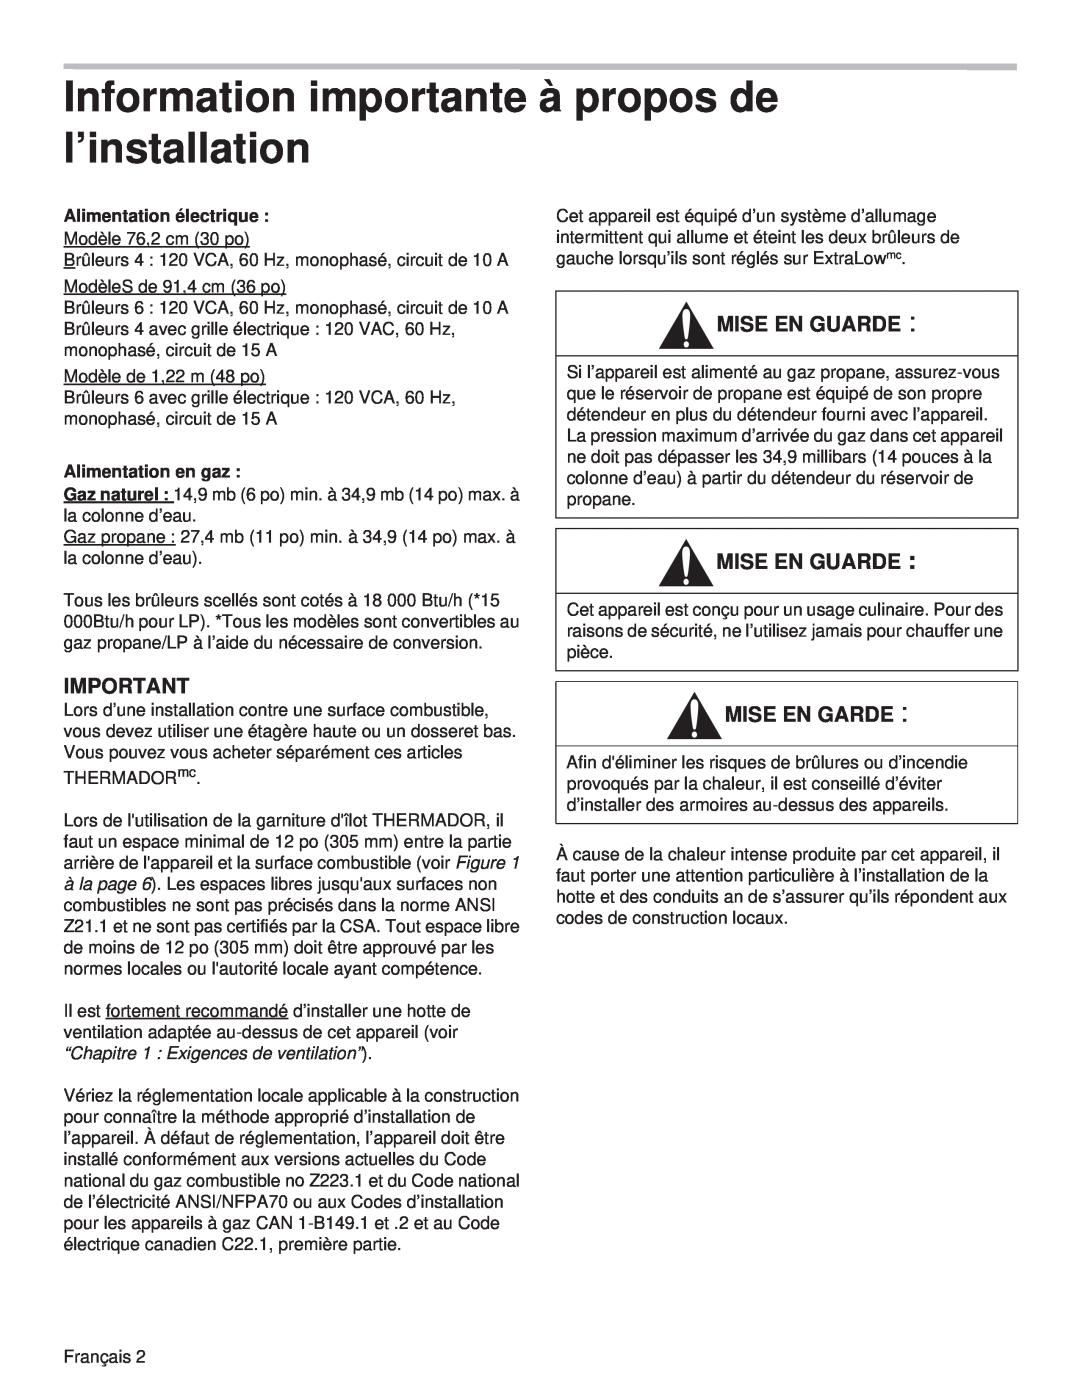 Thermador PCG30 Information importante à propos de l’installation, Mise En Guarde, Mise En Garde, Alimentation électrique 